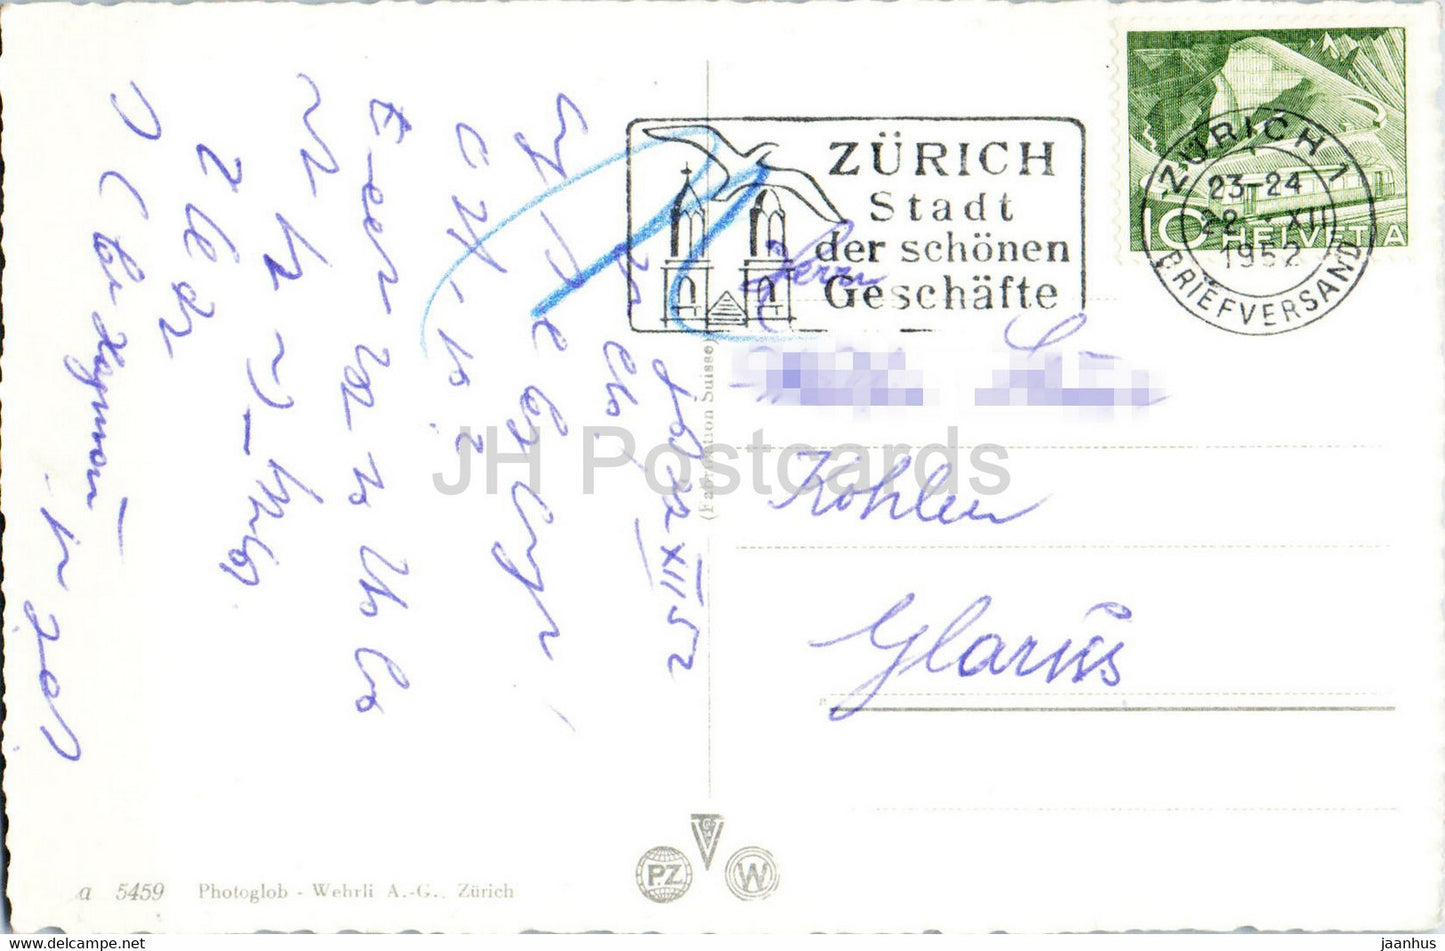 Zurcher Wehrmanner Denkmal auf der Forch - monument - 5459 - old postcard - 1952 - Switzerland - used